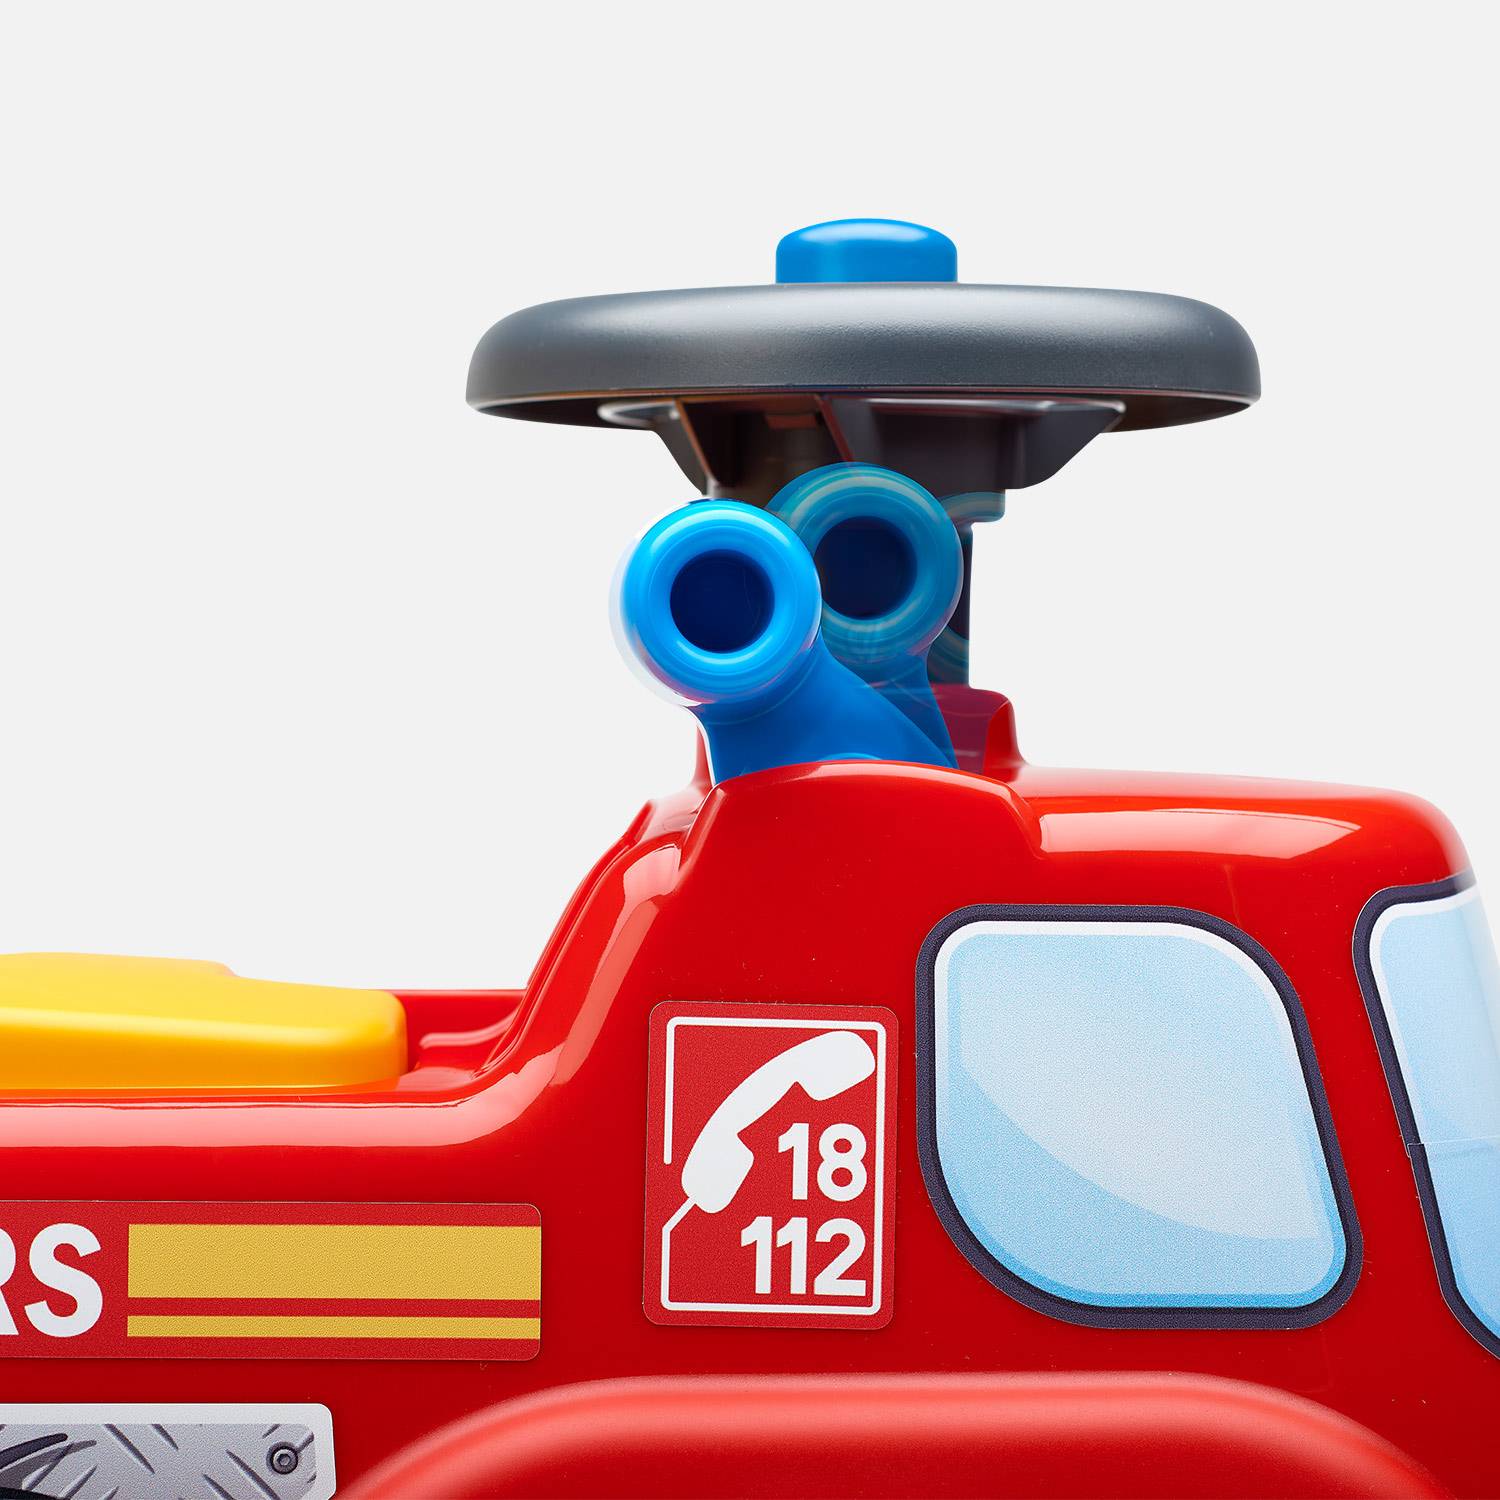 Babyrutscher Feuerwehrwagen mit aufklappbaren Sitz und Lenkrad, mit Hupe, 100% Made in France Photo3